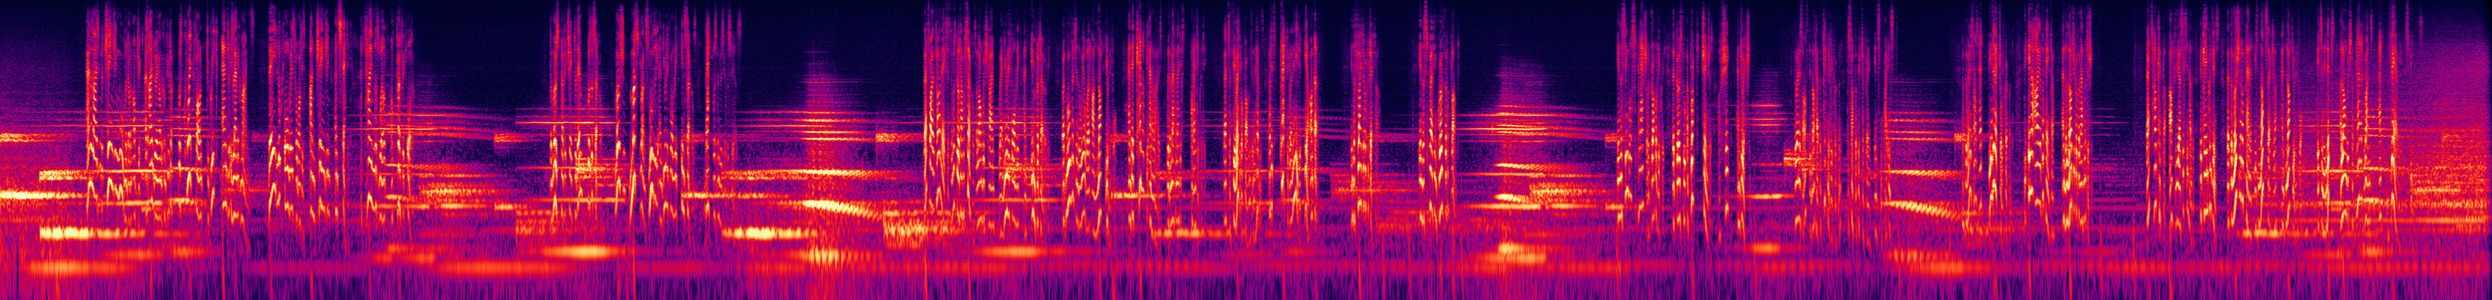 Music of the Spheres - Spectrogram.jpg